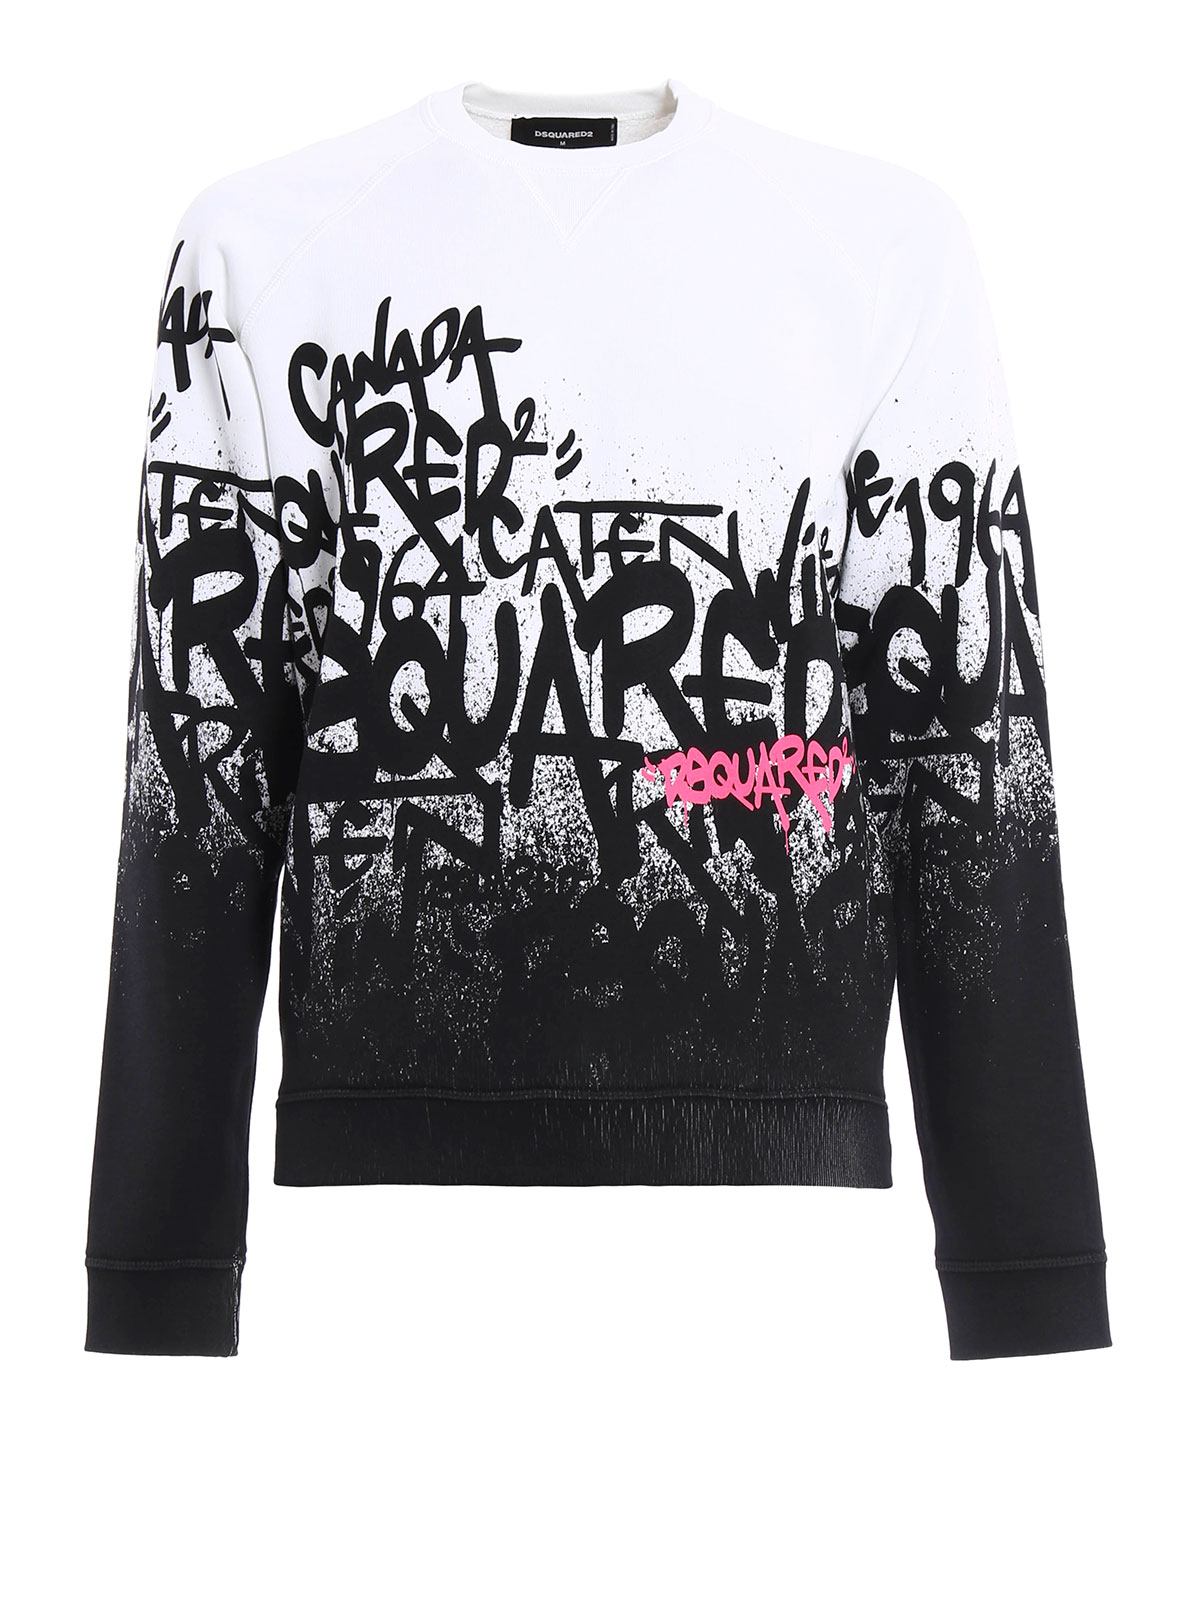 Opstand Terughoudendheid Haalbaarheid Sweatshirts & Sweaters Dsquared2 - Graffiti printed cotton sweatshirt -  S74GU0118S25030100